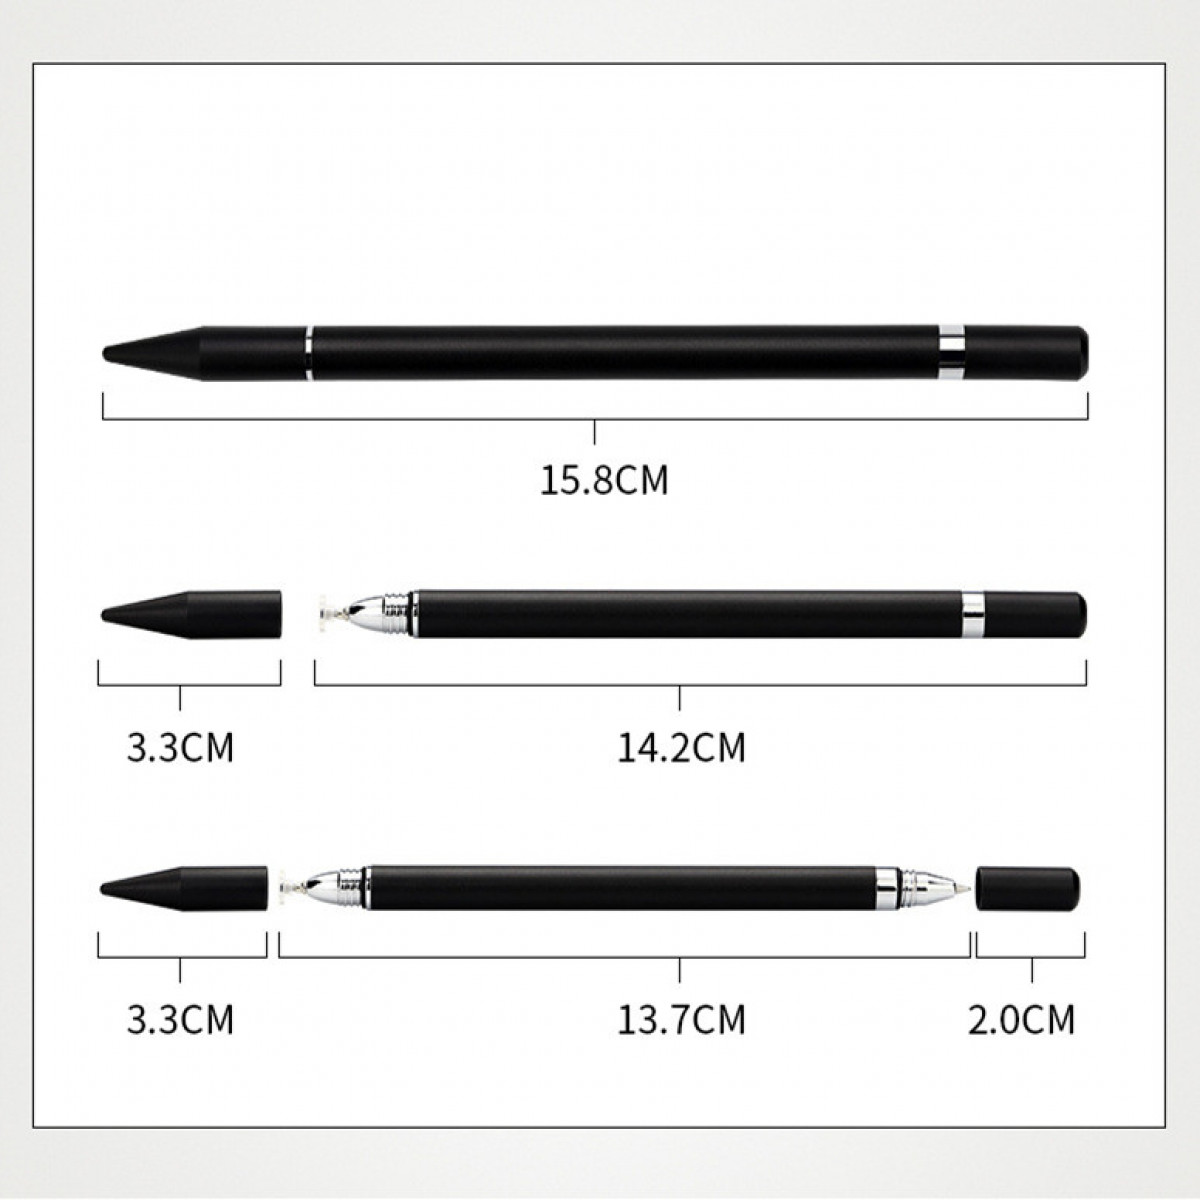 INF 2 in 1 Touch Eingabestift mit Schreibfunktion Stylus Pen Weiß Weiß